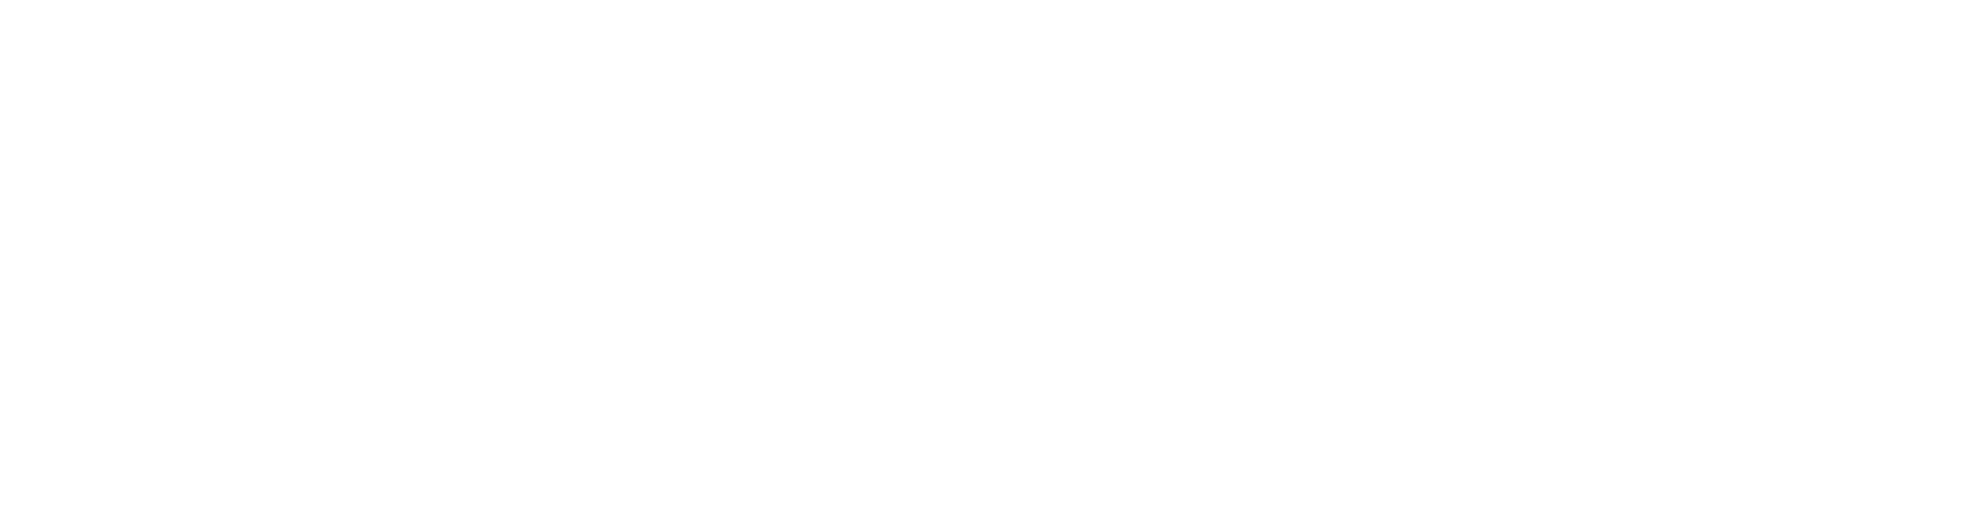 Fluxo Unificado